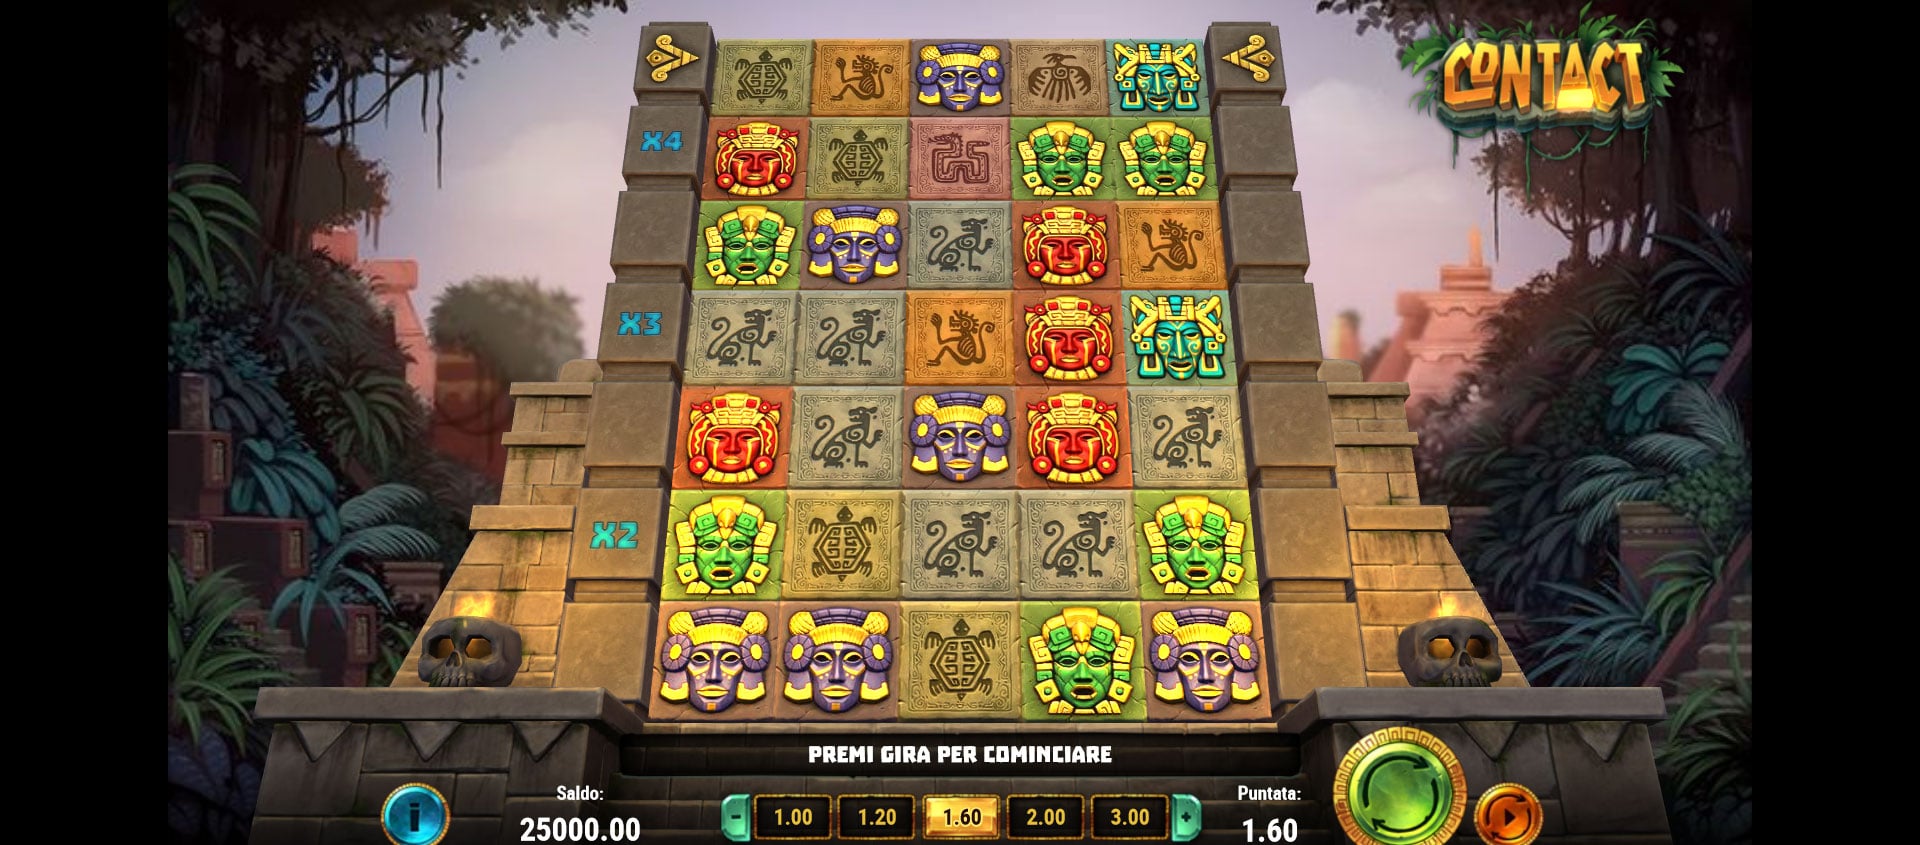 schermata del gioco slot machine contact